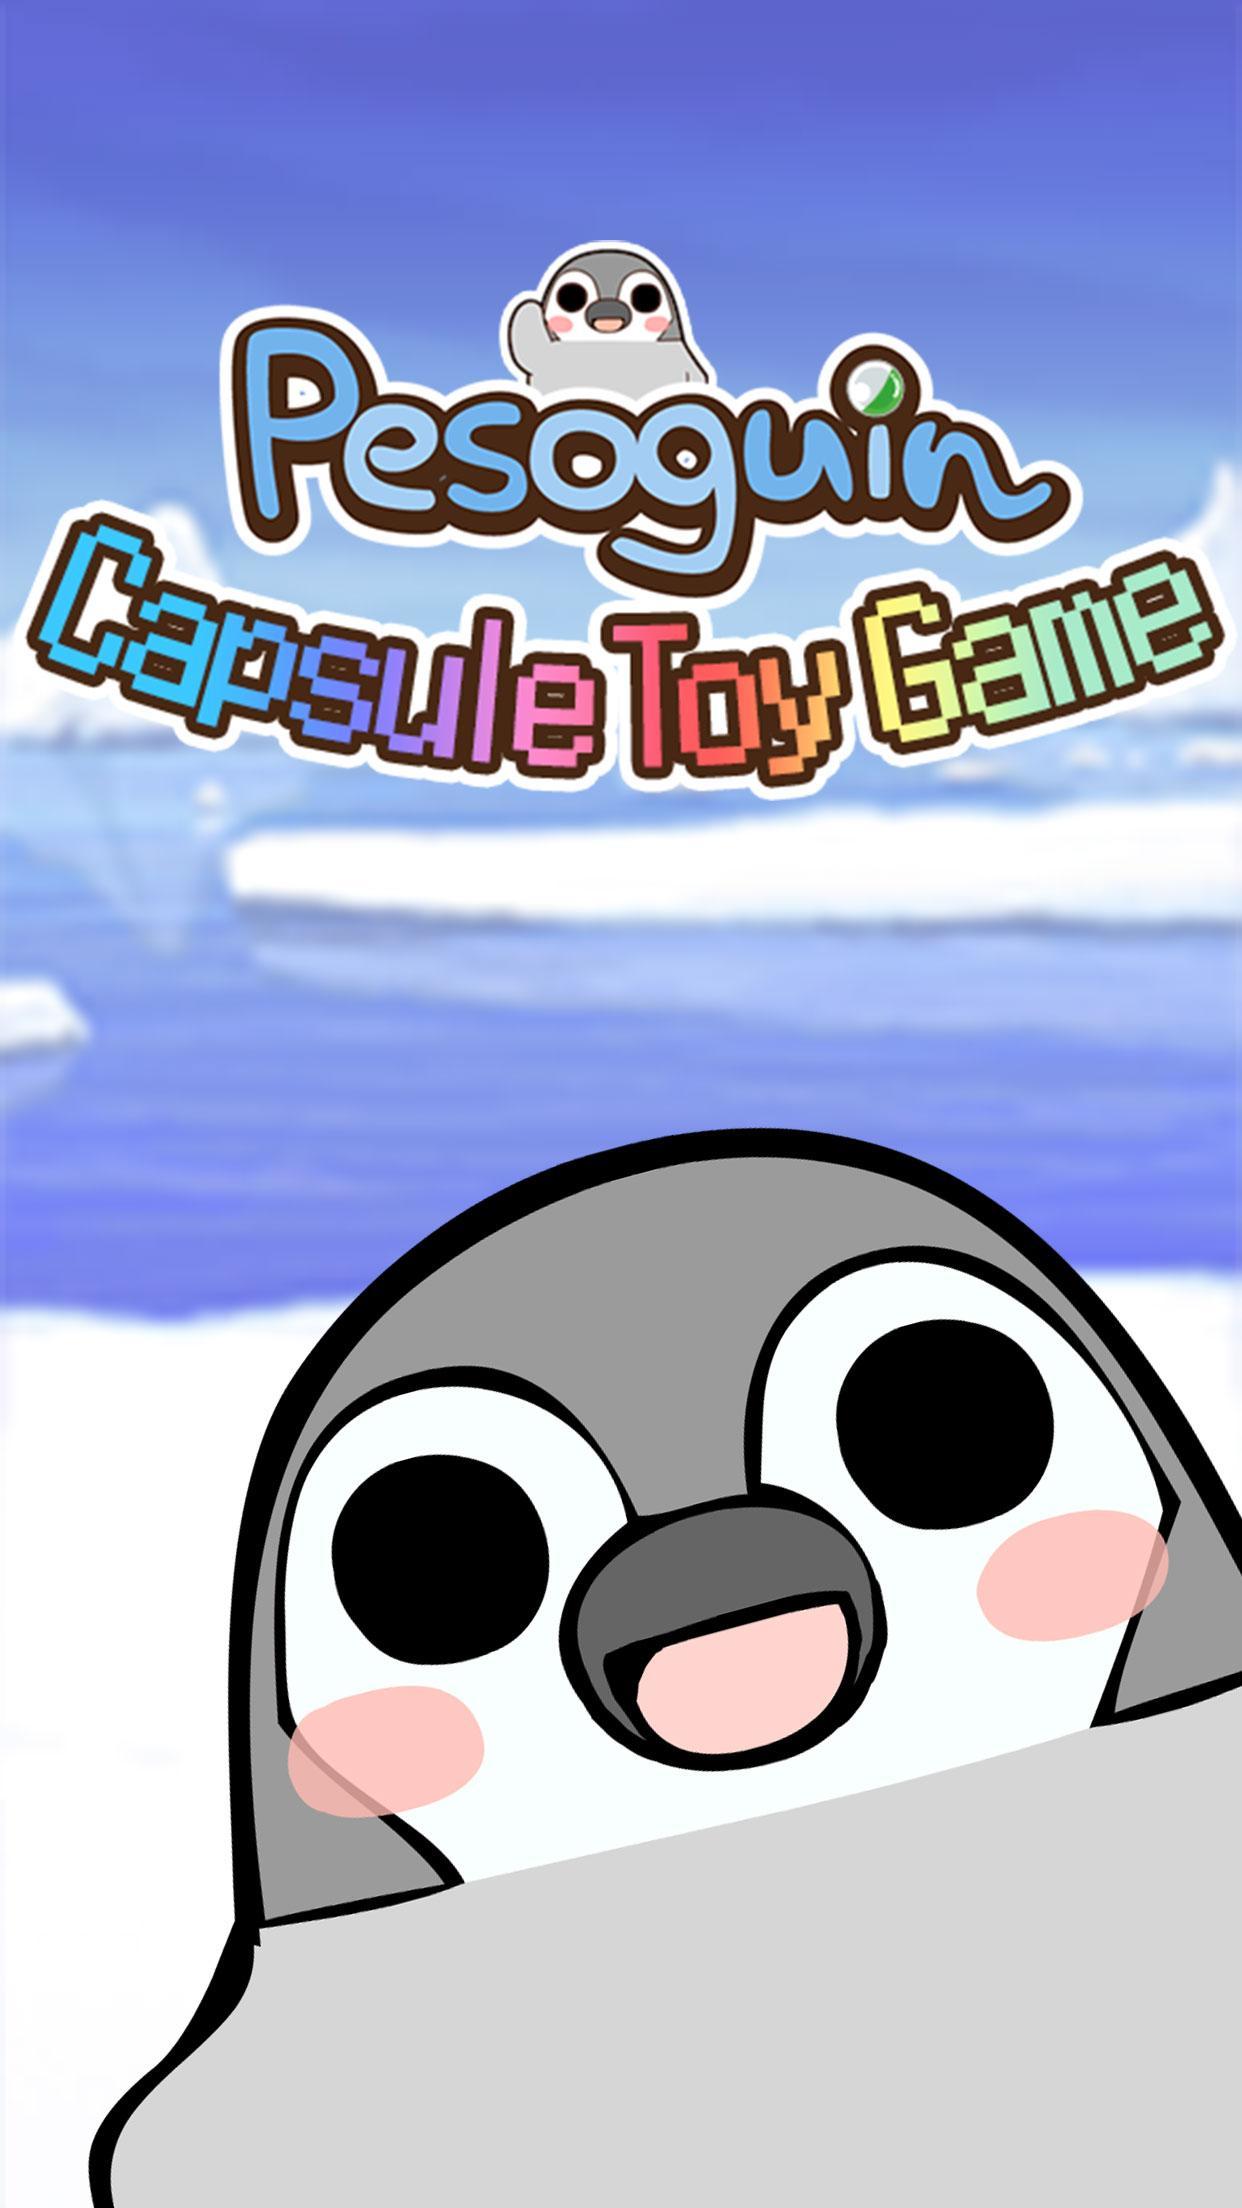 Screenshot 1 of Pesoguin capsule toy game 1.9.7